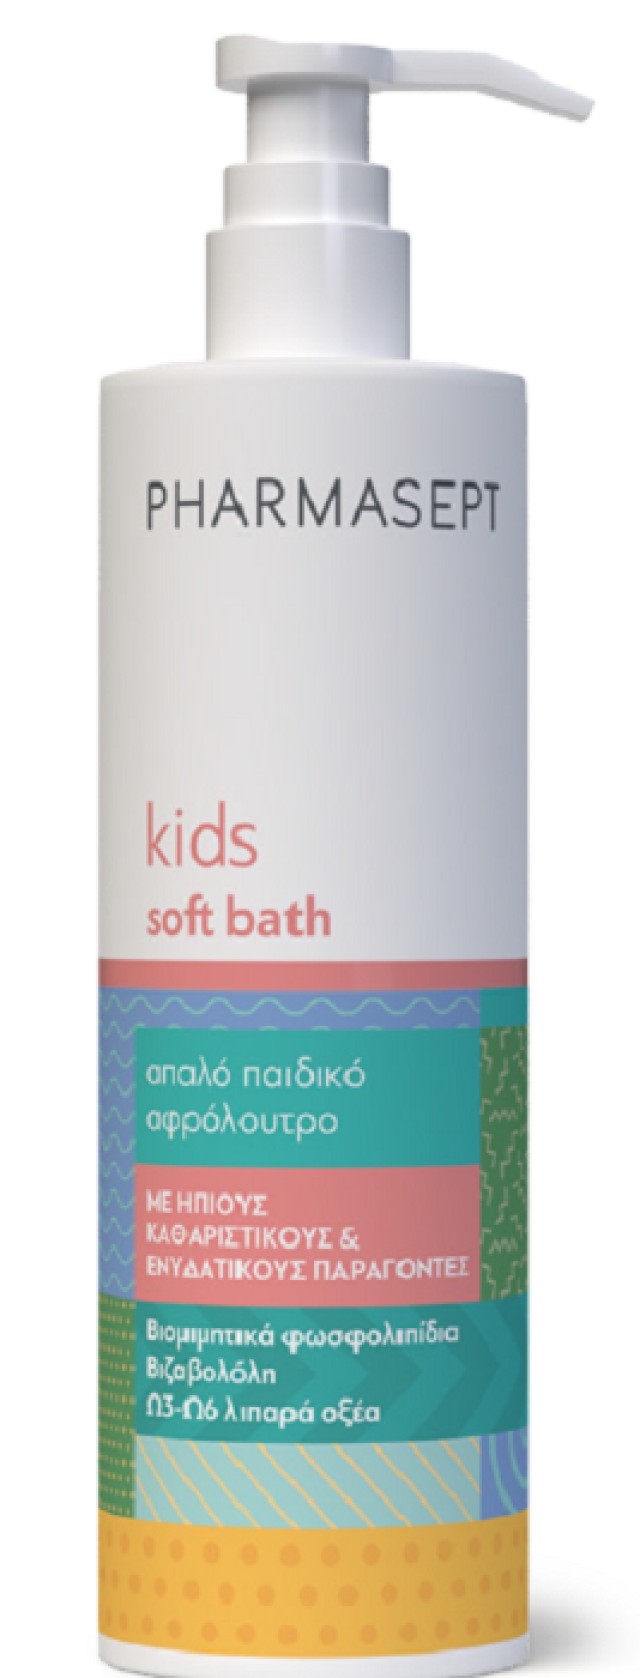 Pharmasept Kids Soft Bath Υποαλλεργικό Παιδικό Αφρόλουτρο 500ml